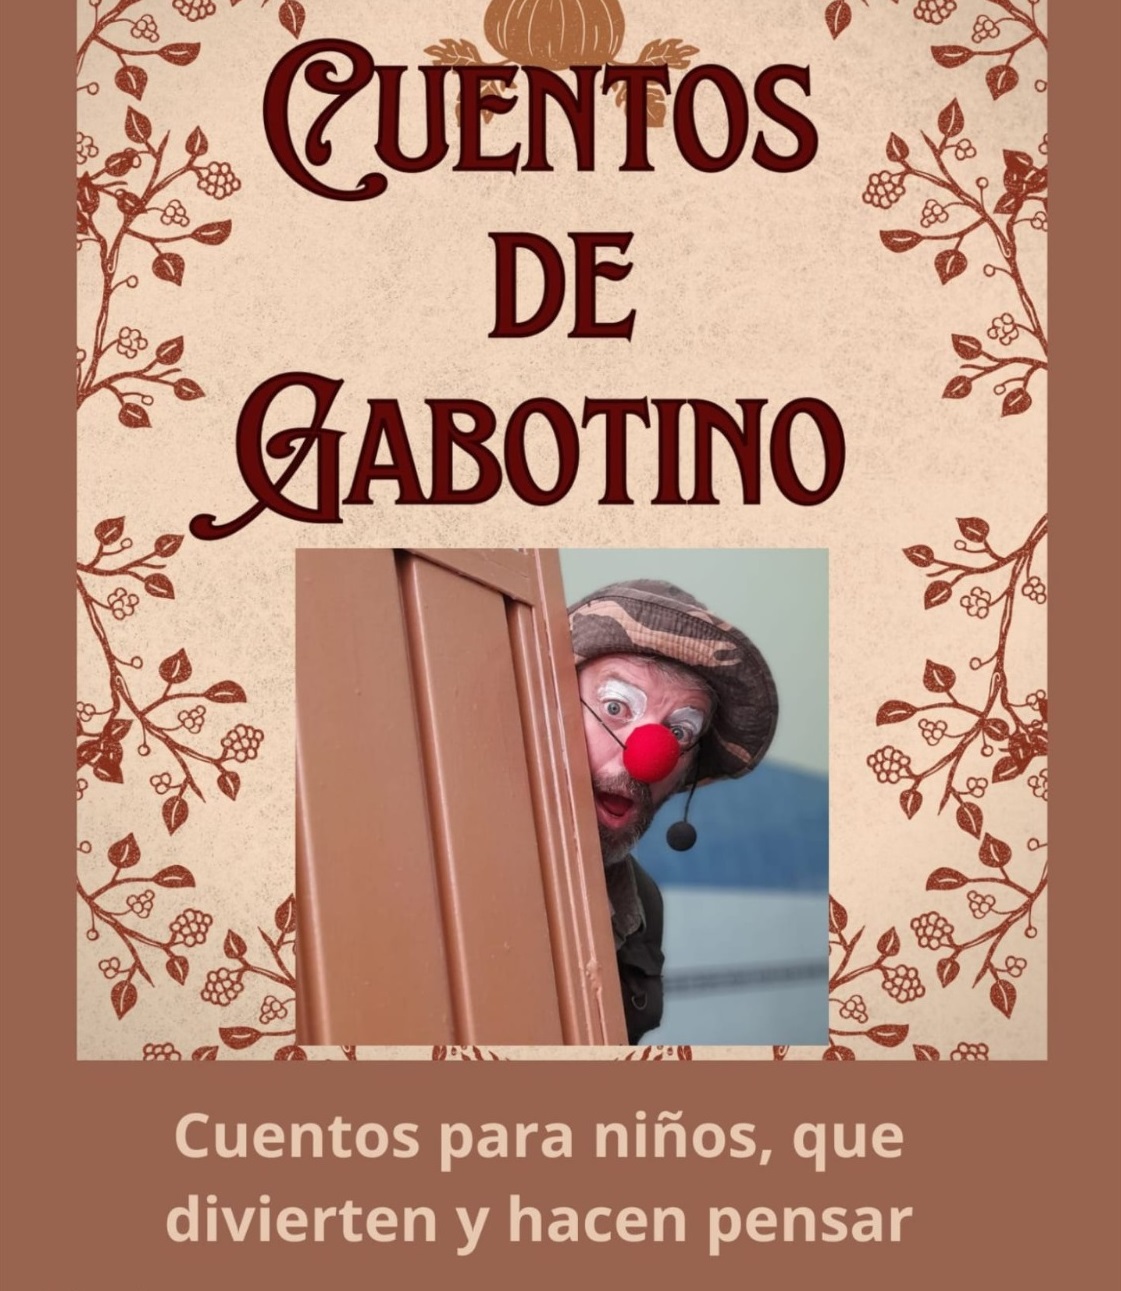 Cuentos de Gabotino II, von Bola 8